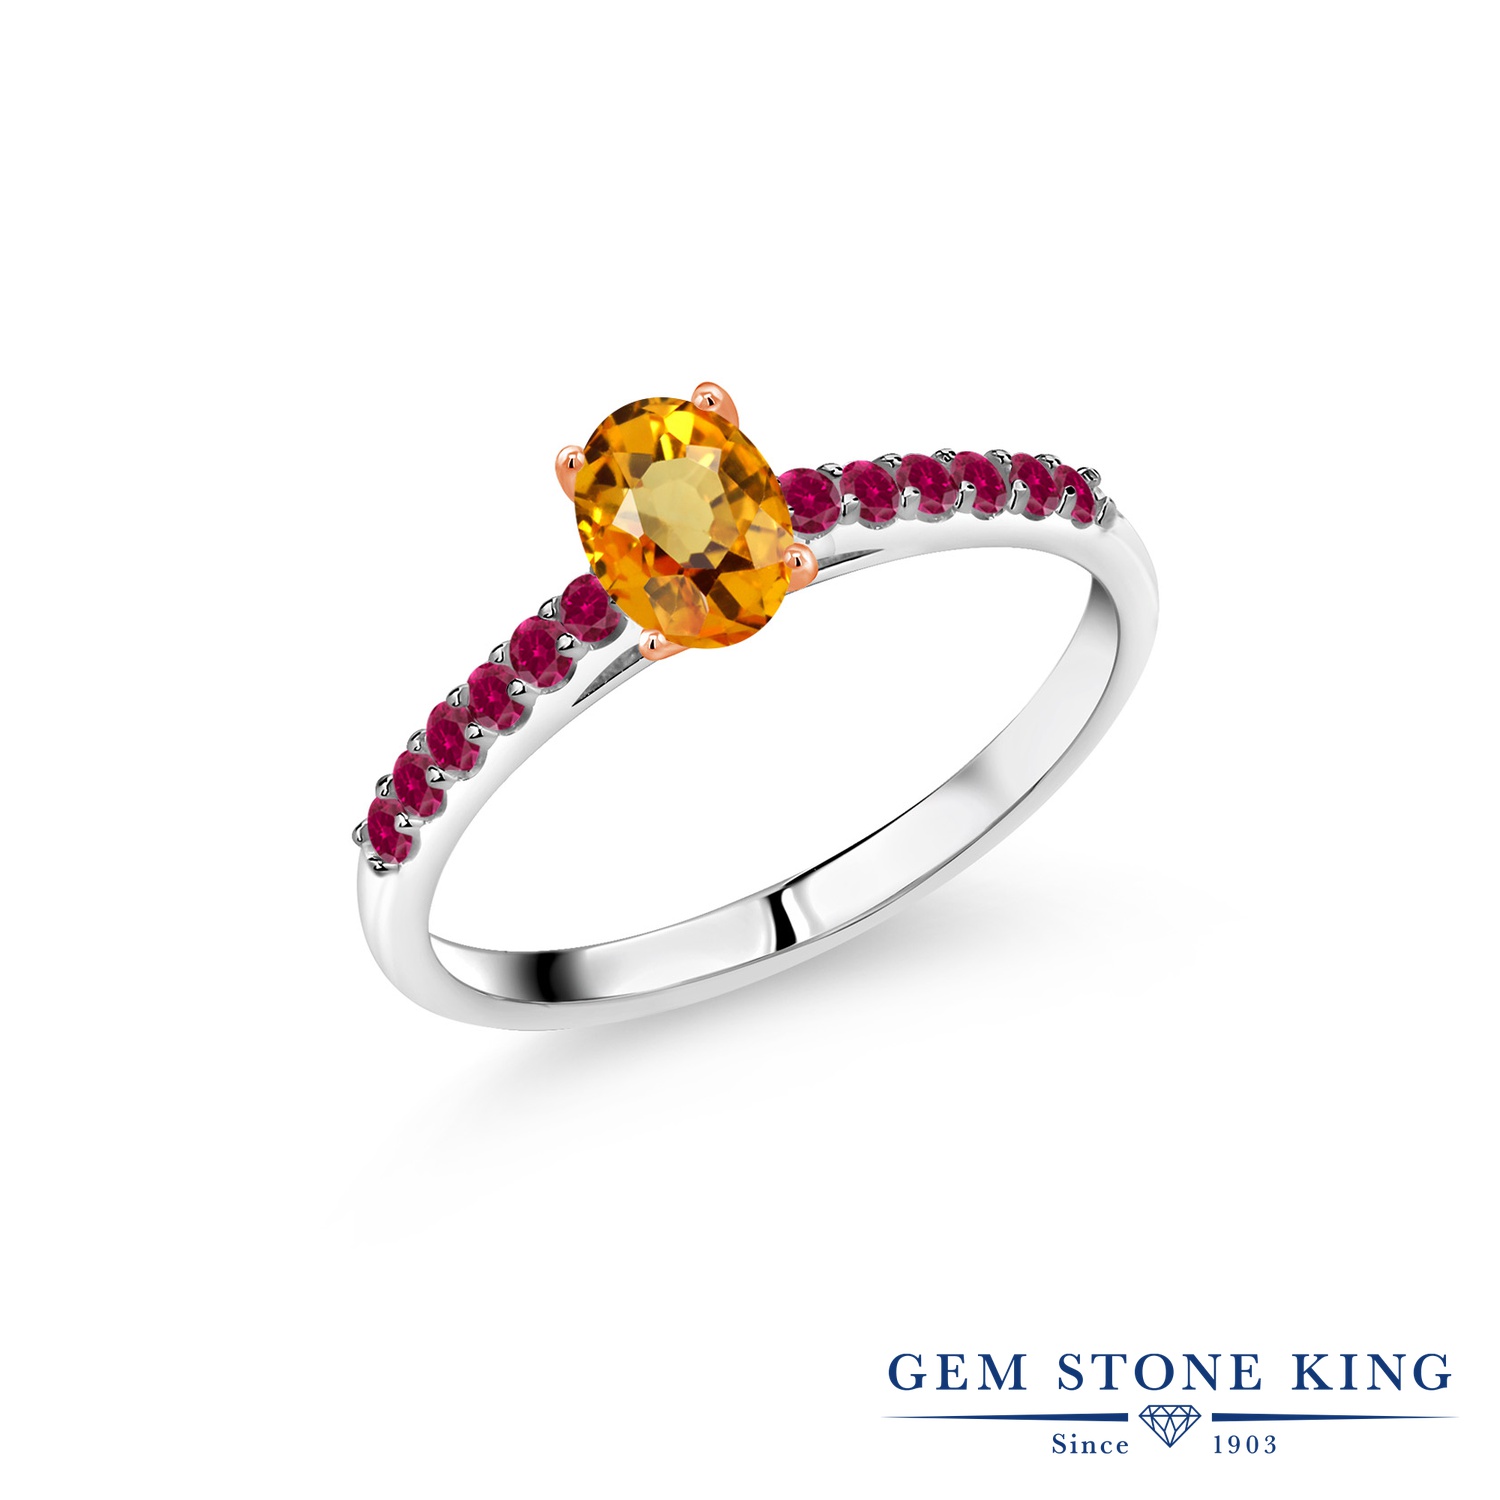 安心 保証 プラチナルビーリング ダイヤモンド ジュエリー リング 指輪 プレゼント 贈り物 ギフト 女性用 G1581